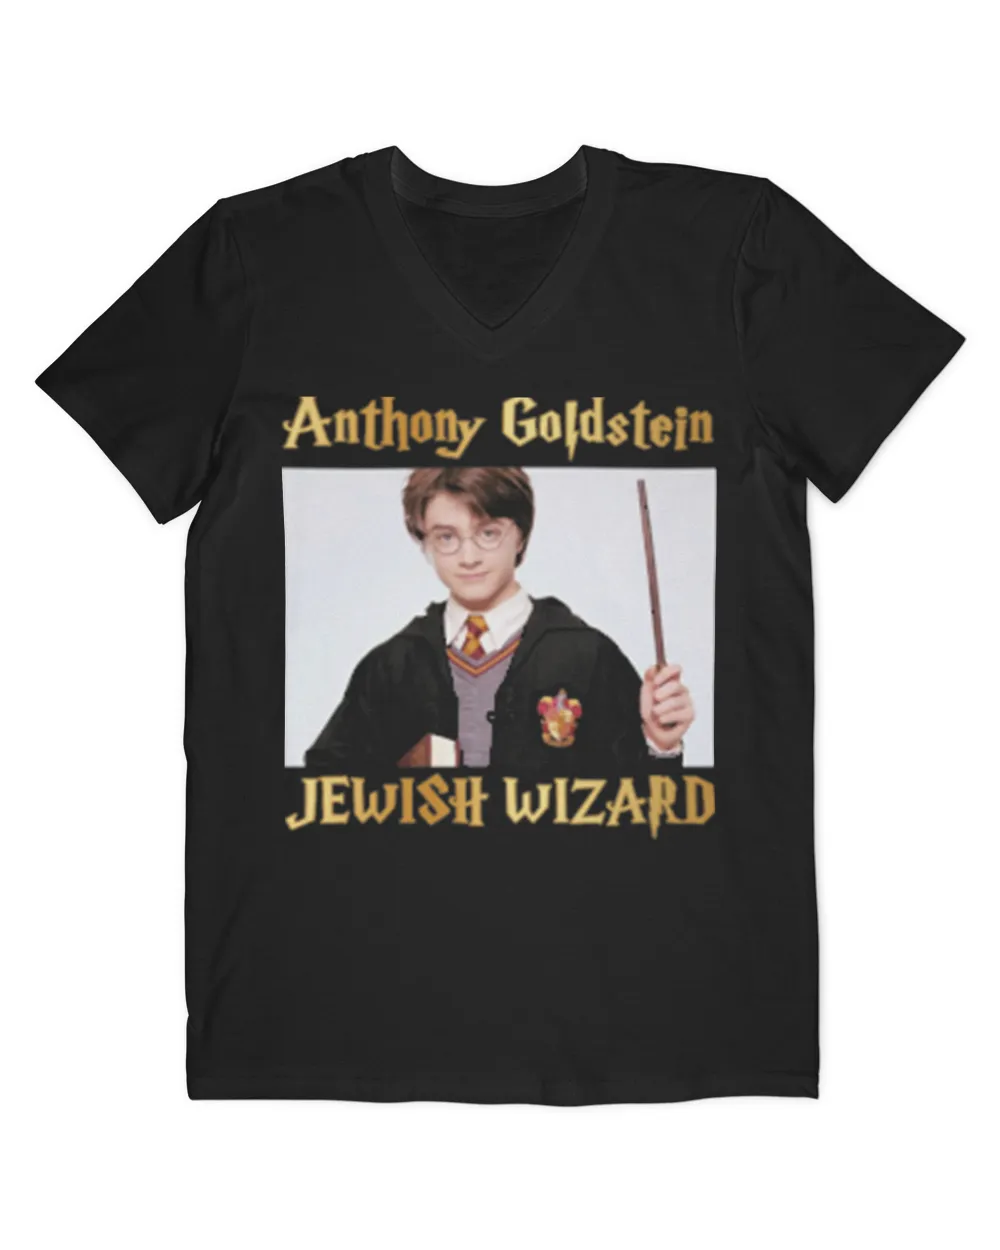 Anthony goldstein jewish wizard shirt